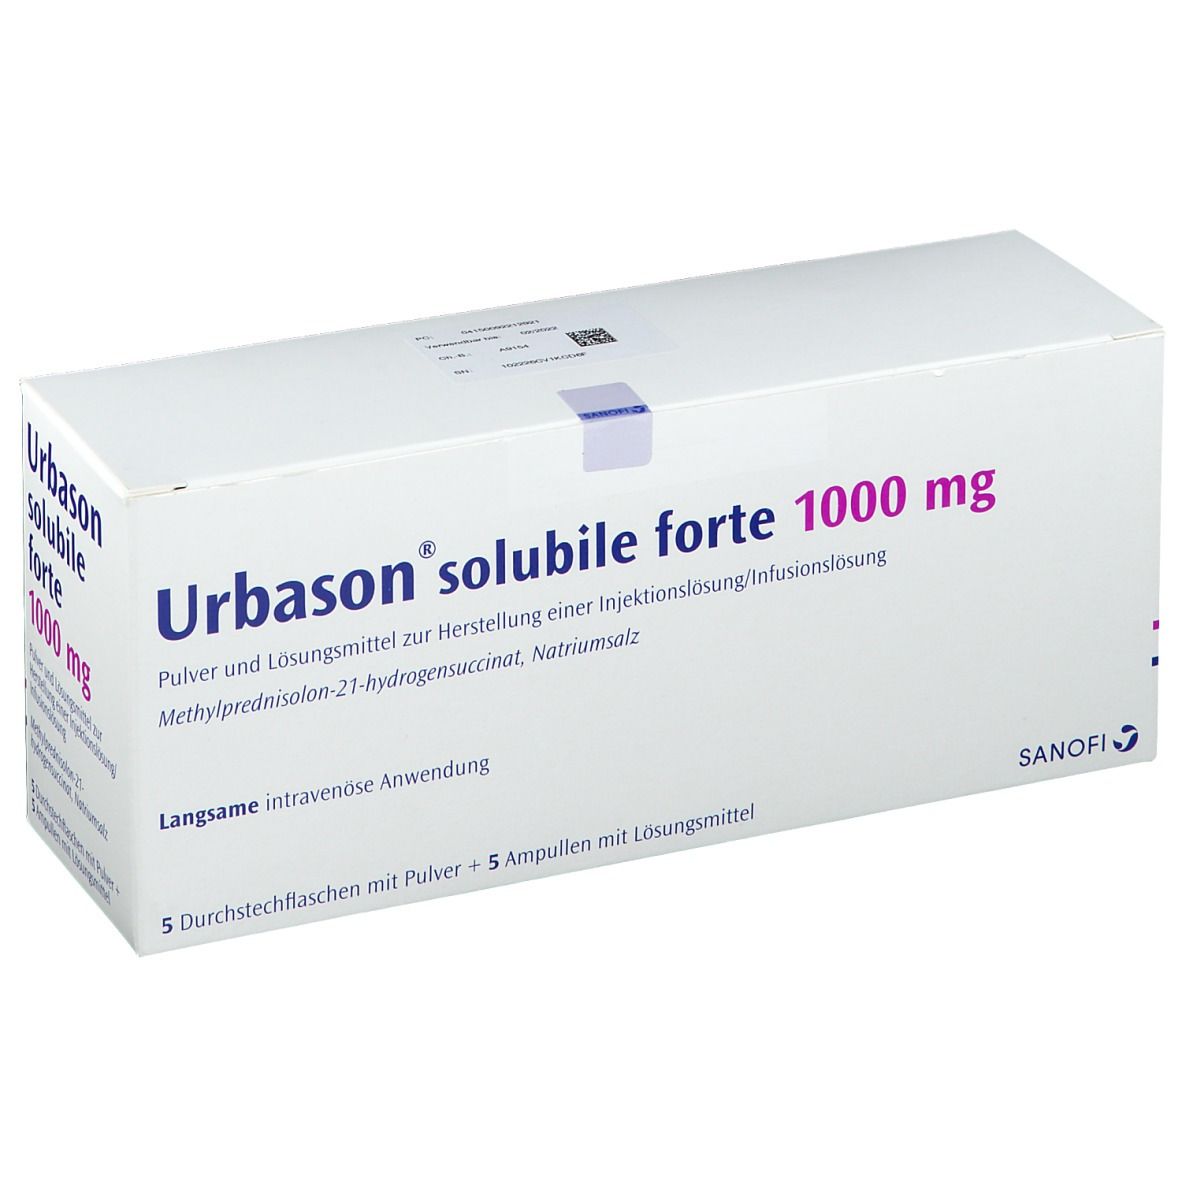 Urbason® solubile forte 1000 mg